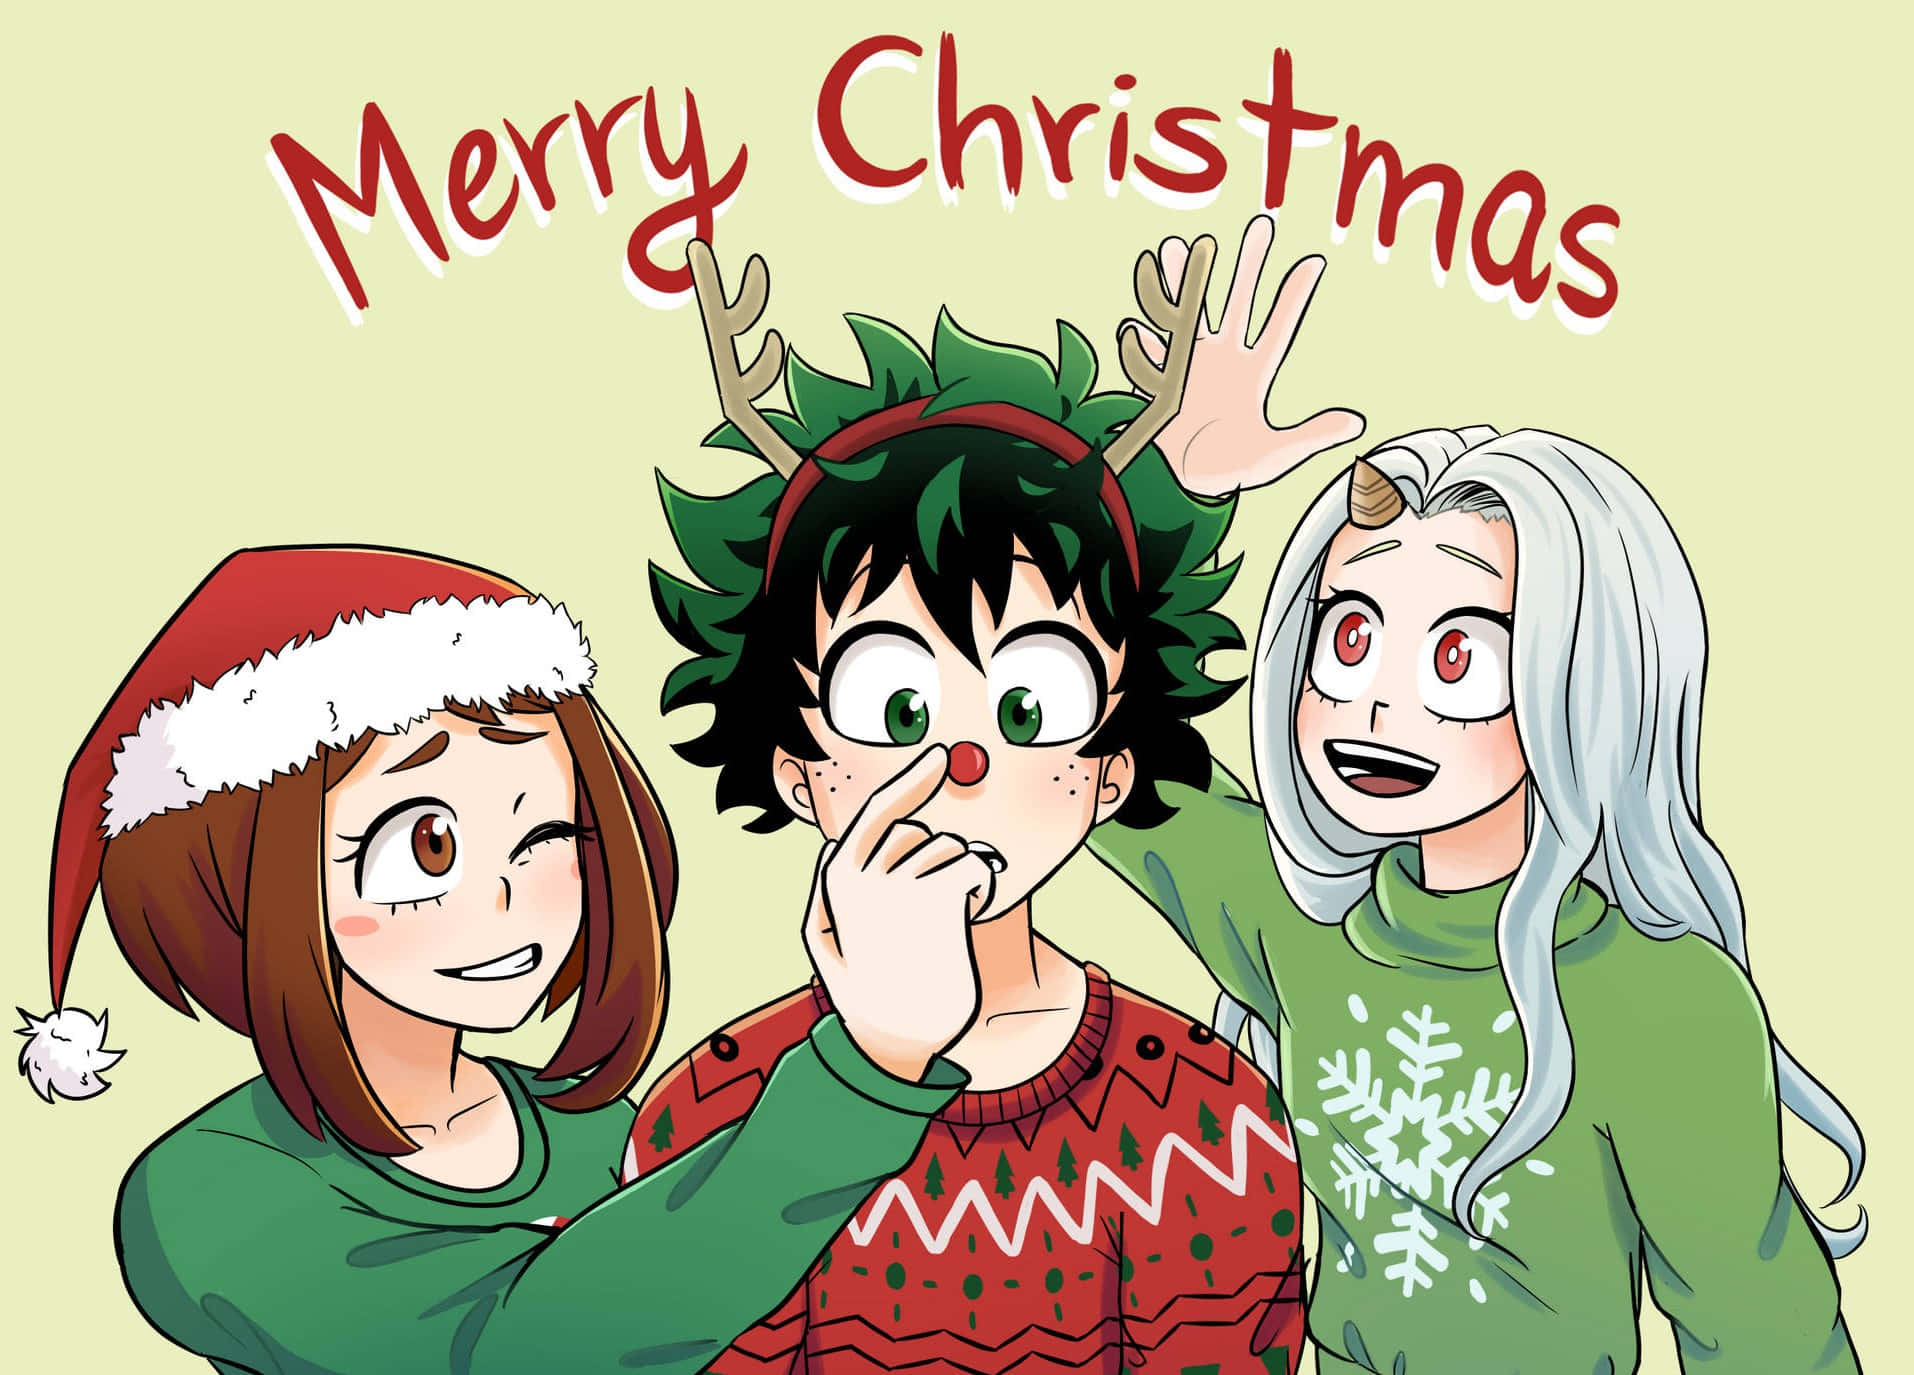 Spridjulglädjen Med Denna Livliga Anime-julbakgrund!